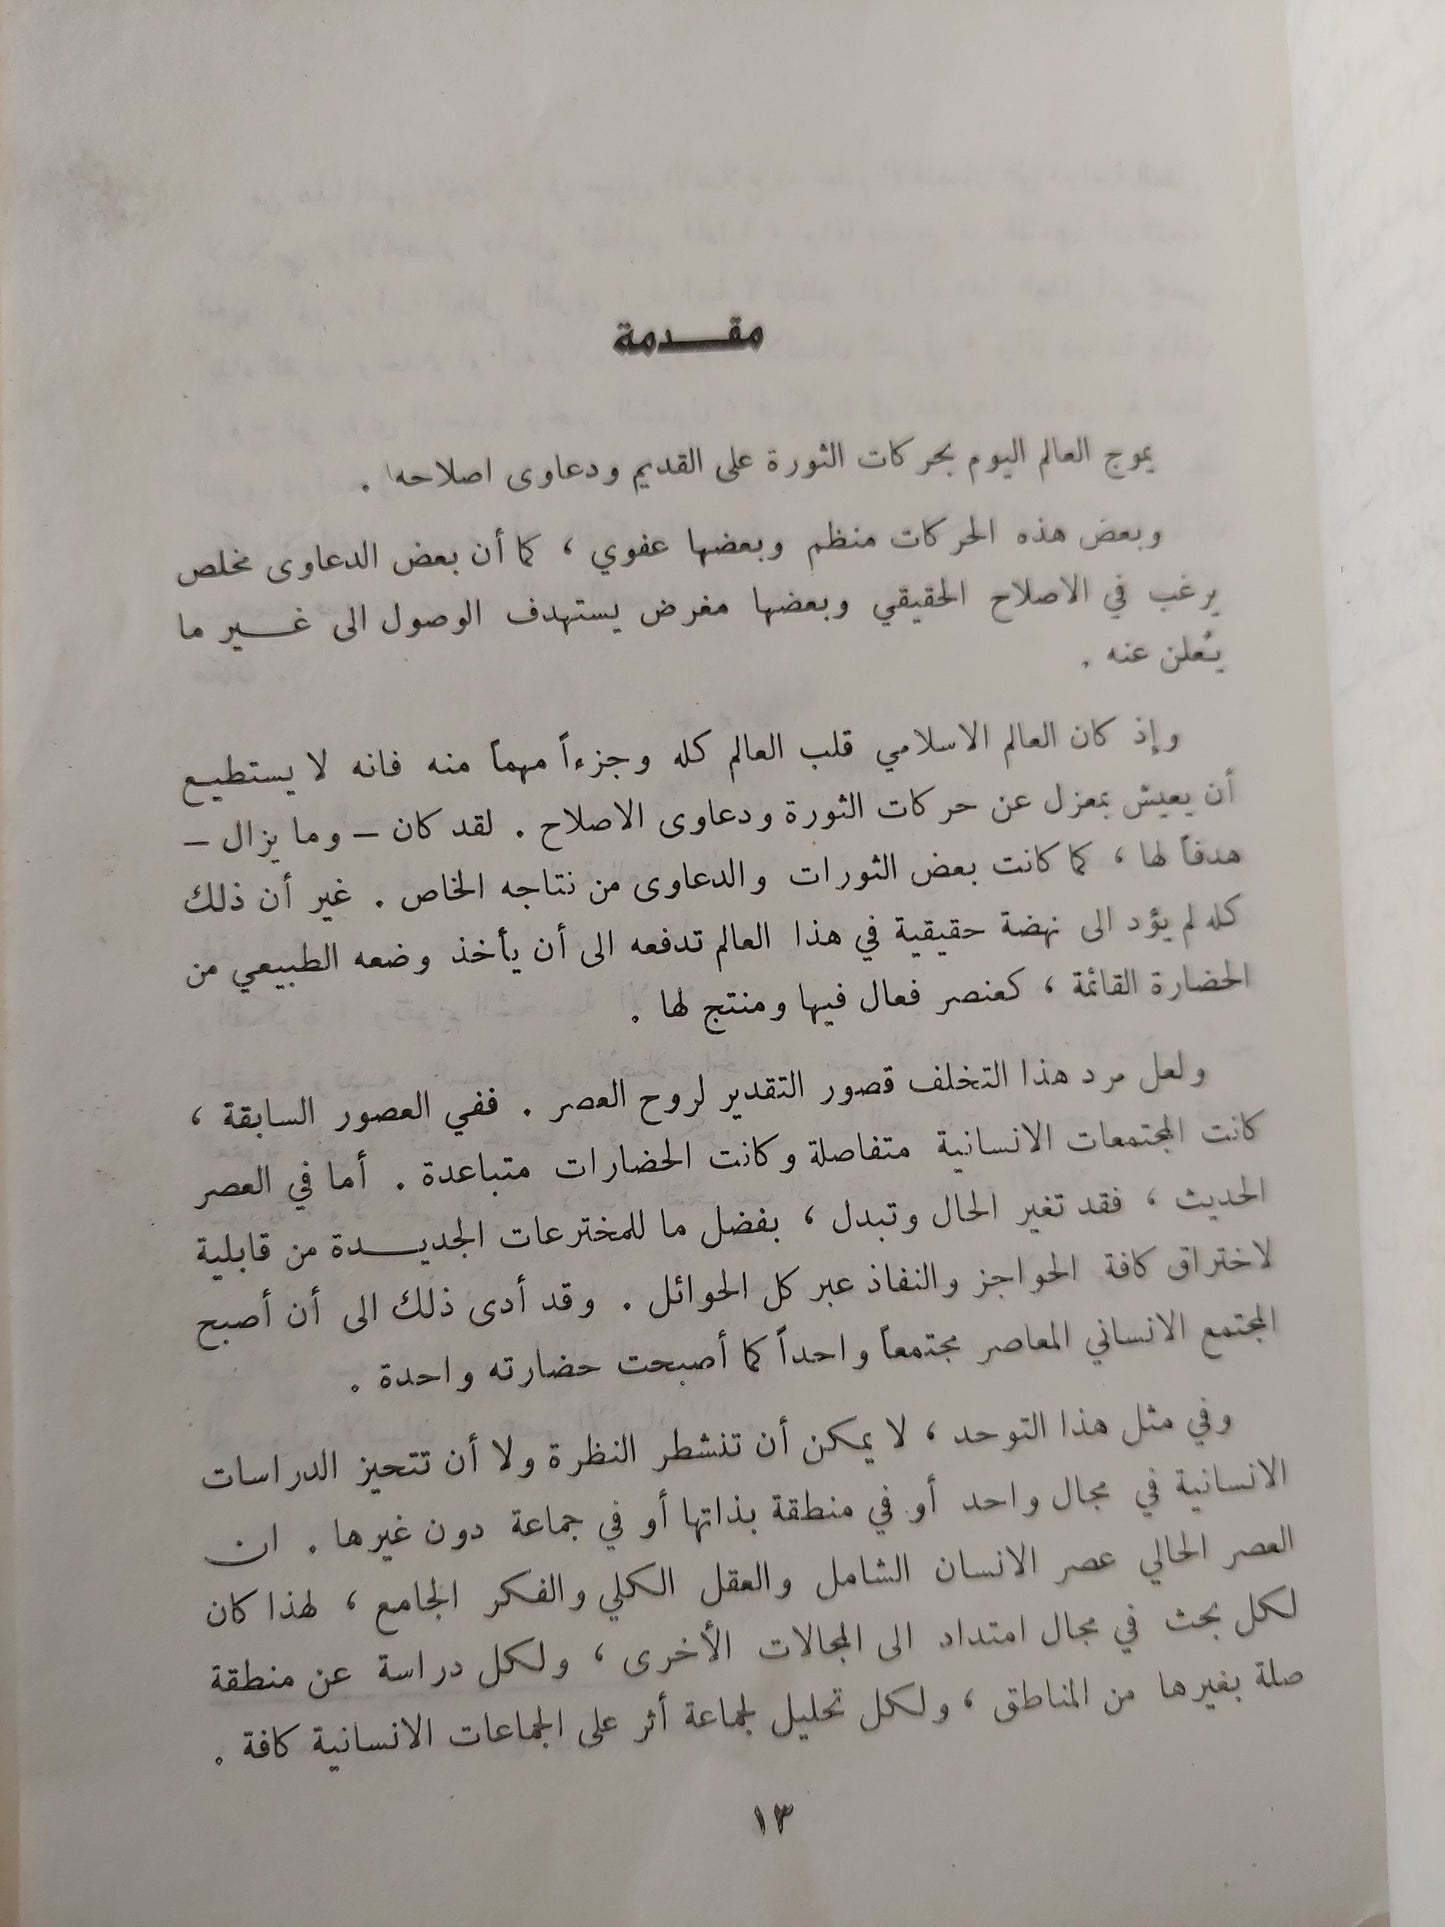 حصاد العقل في اتجاهات المصير الإنساني / محمد سعيد العشماوي